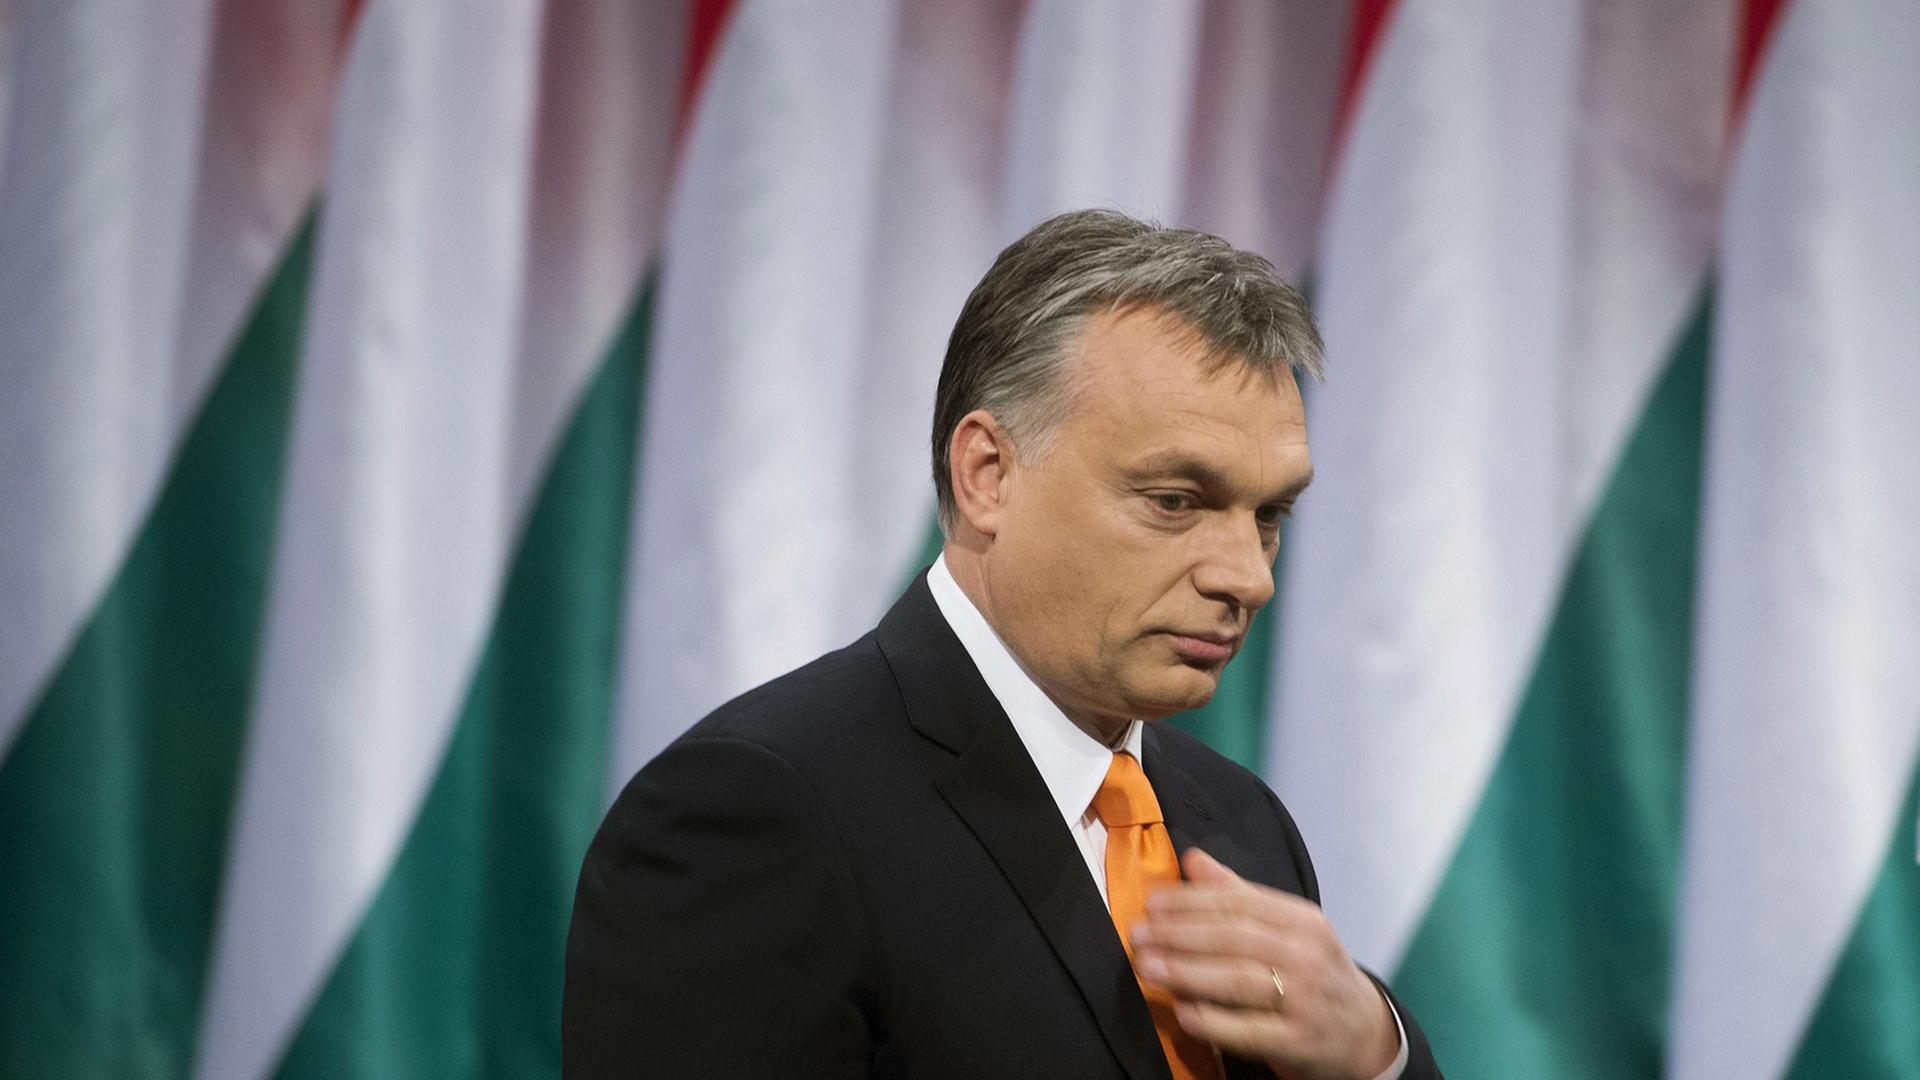 Viktor Orbáns Politik ermüdet die Wählerinnen und Wähler.